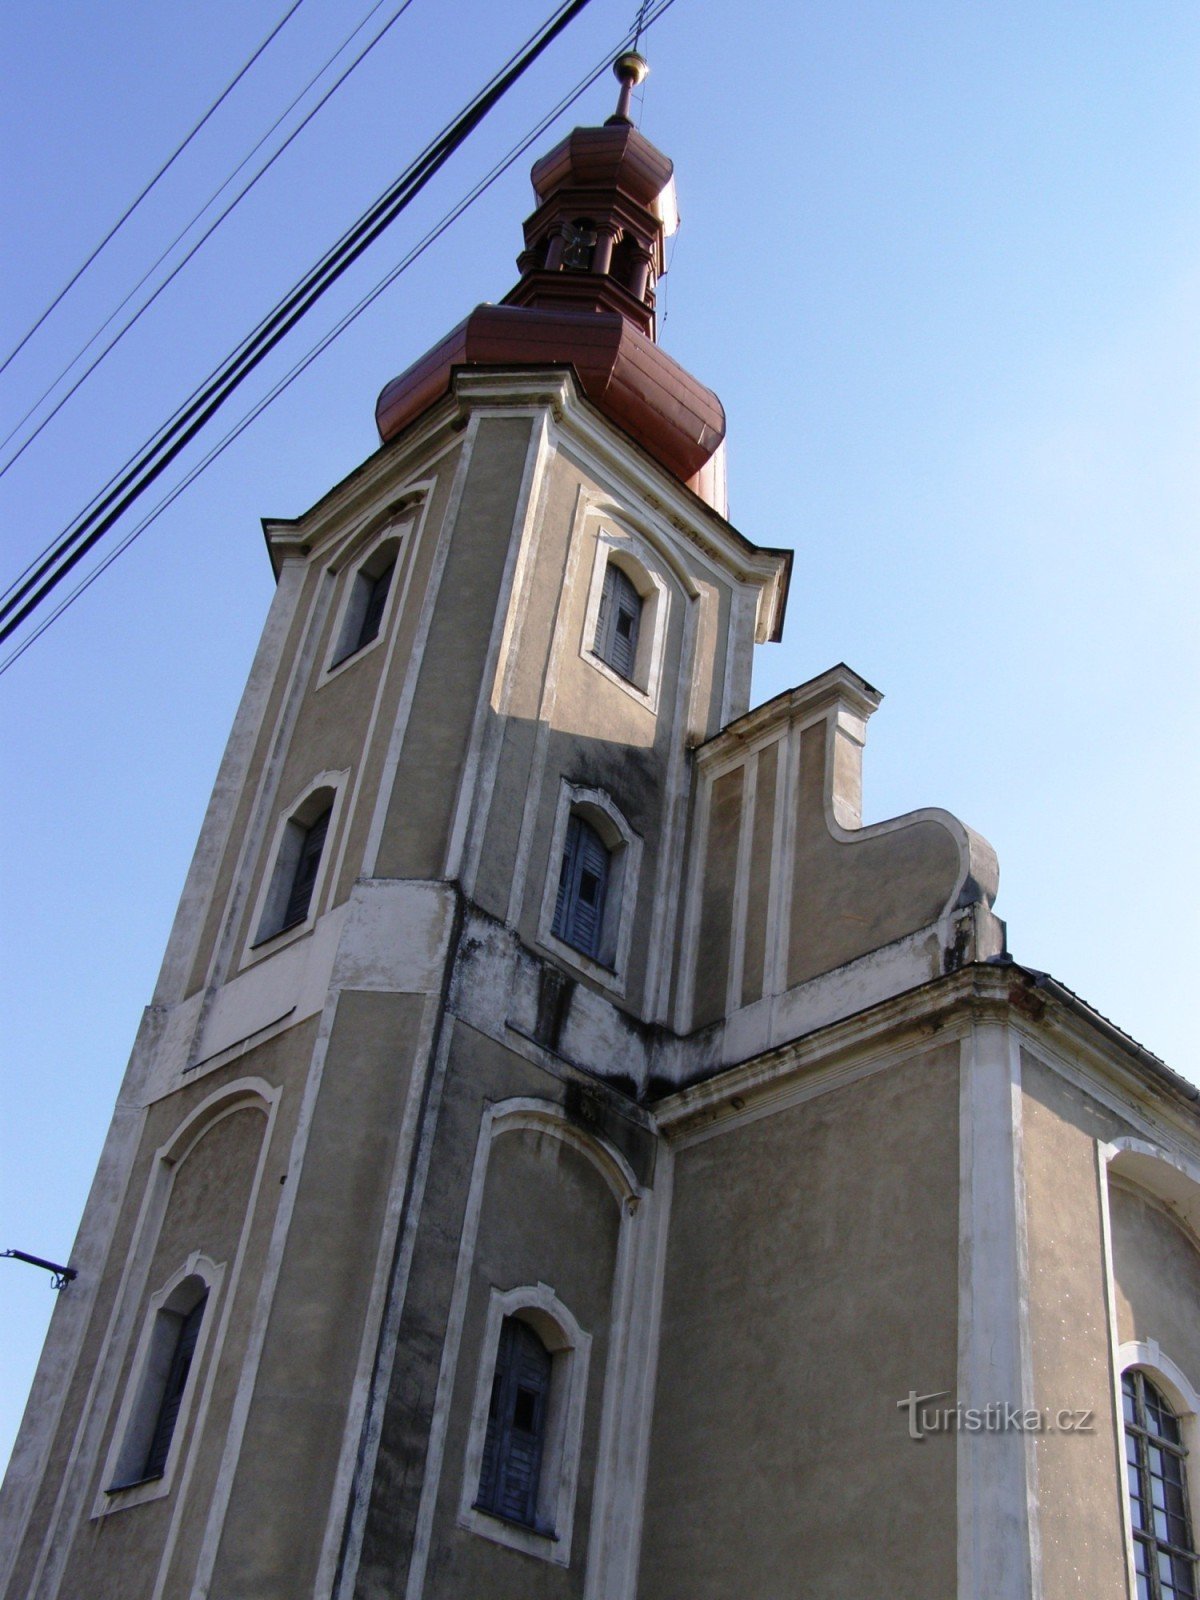 Домашов - Церковь св. Томас